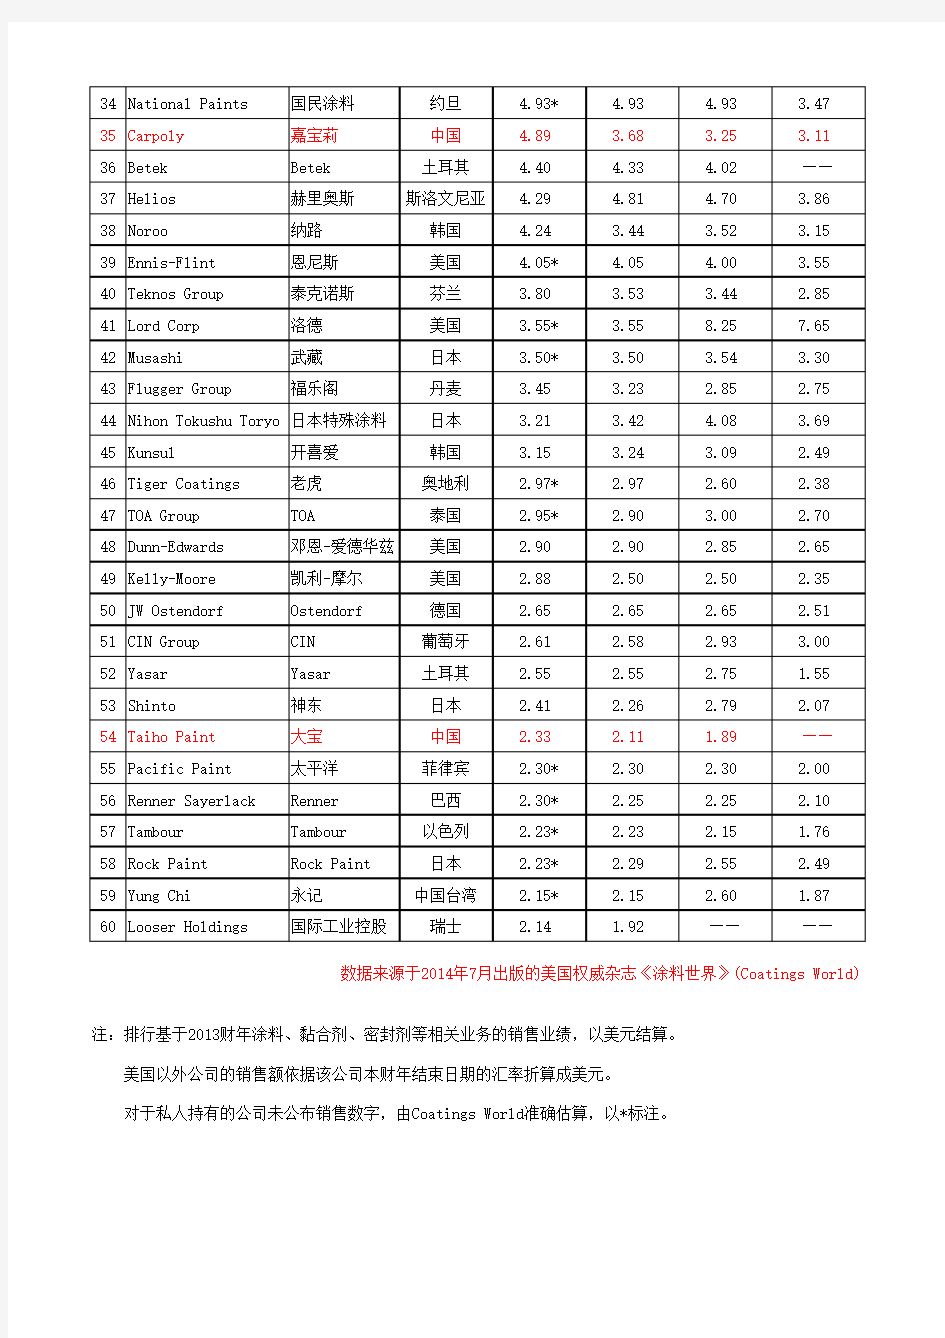 2014年全球涂料企业排行榜